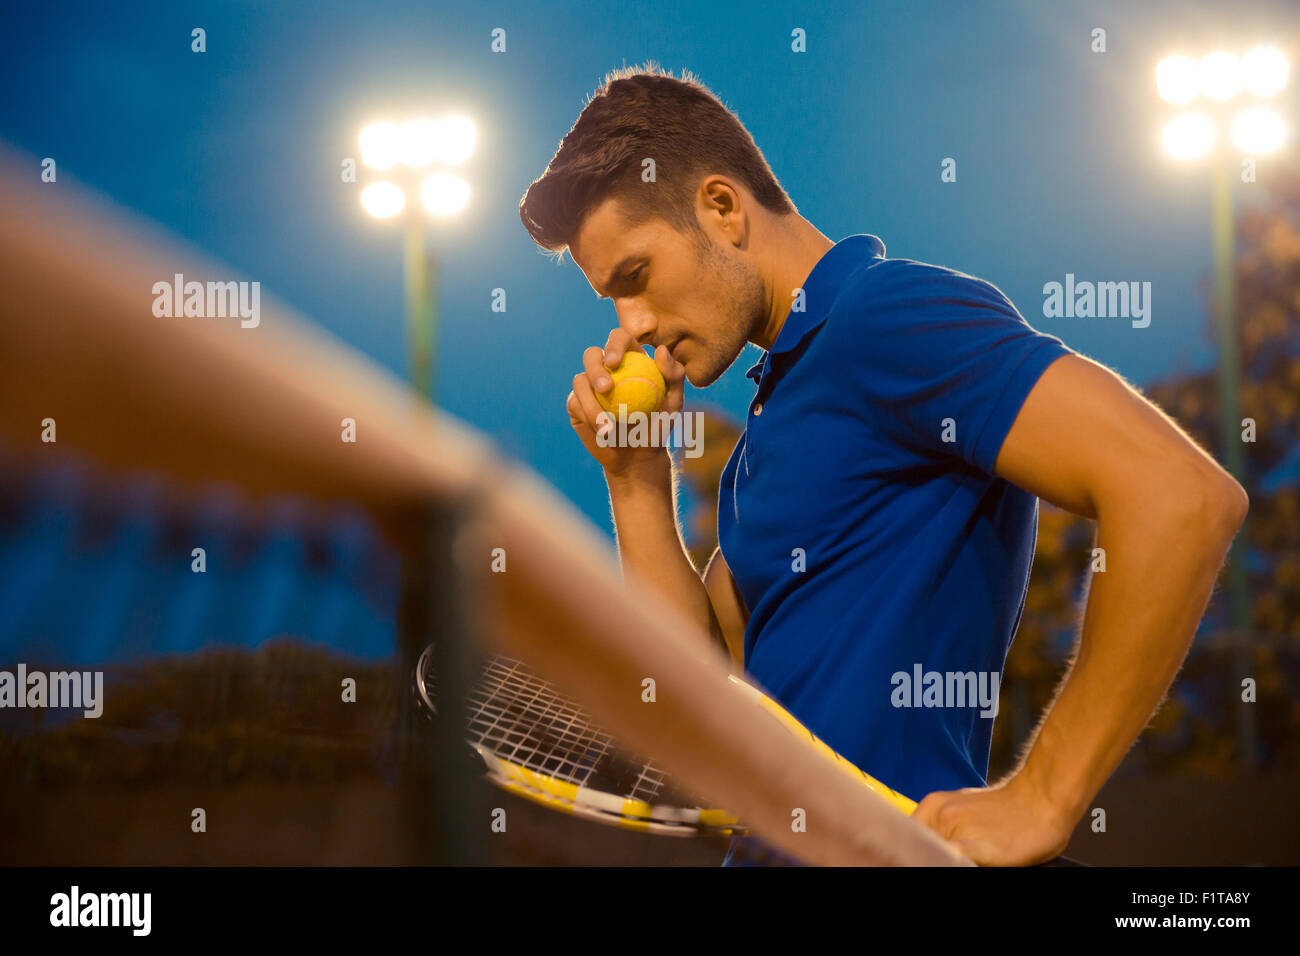 Portrait d'un joueur de tennis pensif standing outdoors Banque D'Images